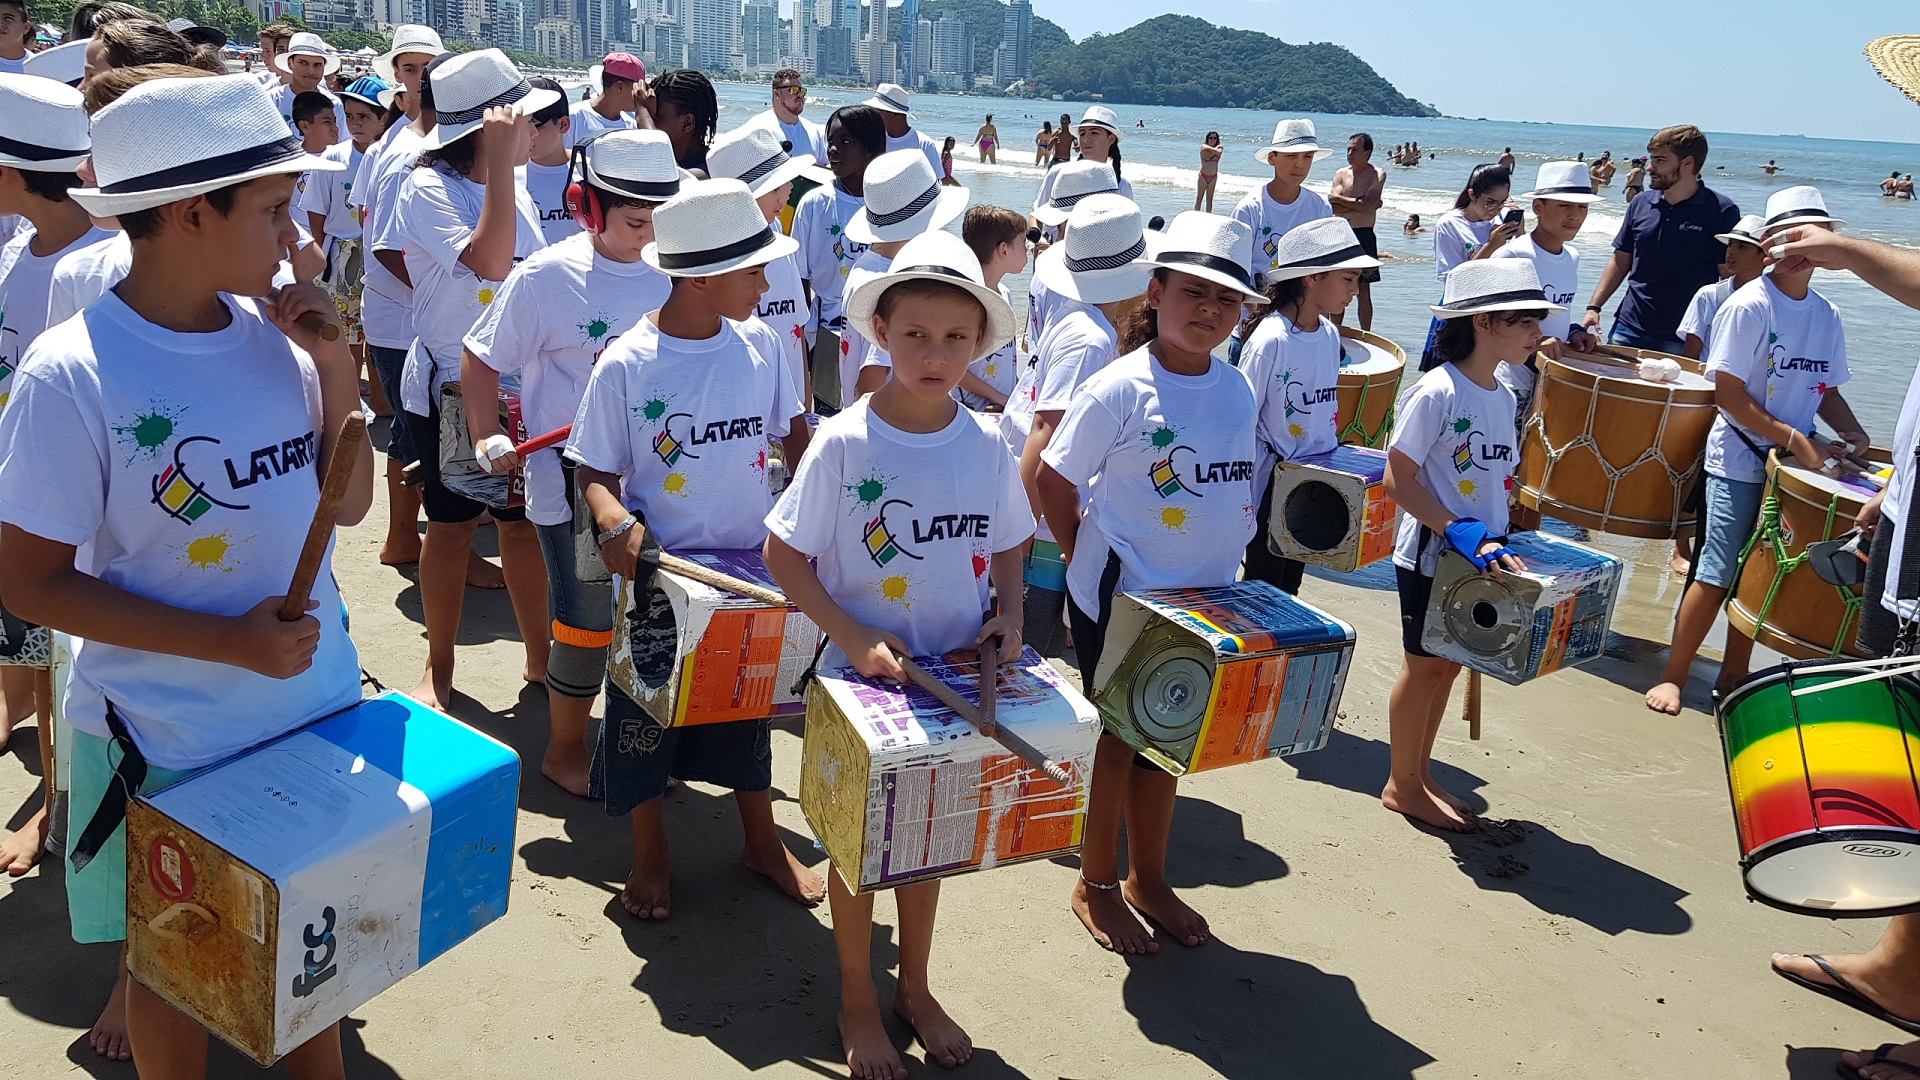 Crianças do projeto Latarte agitaram a Praia Central neste sábado